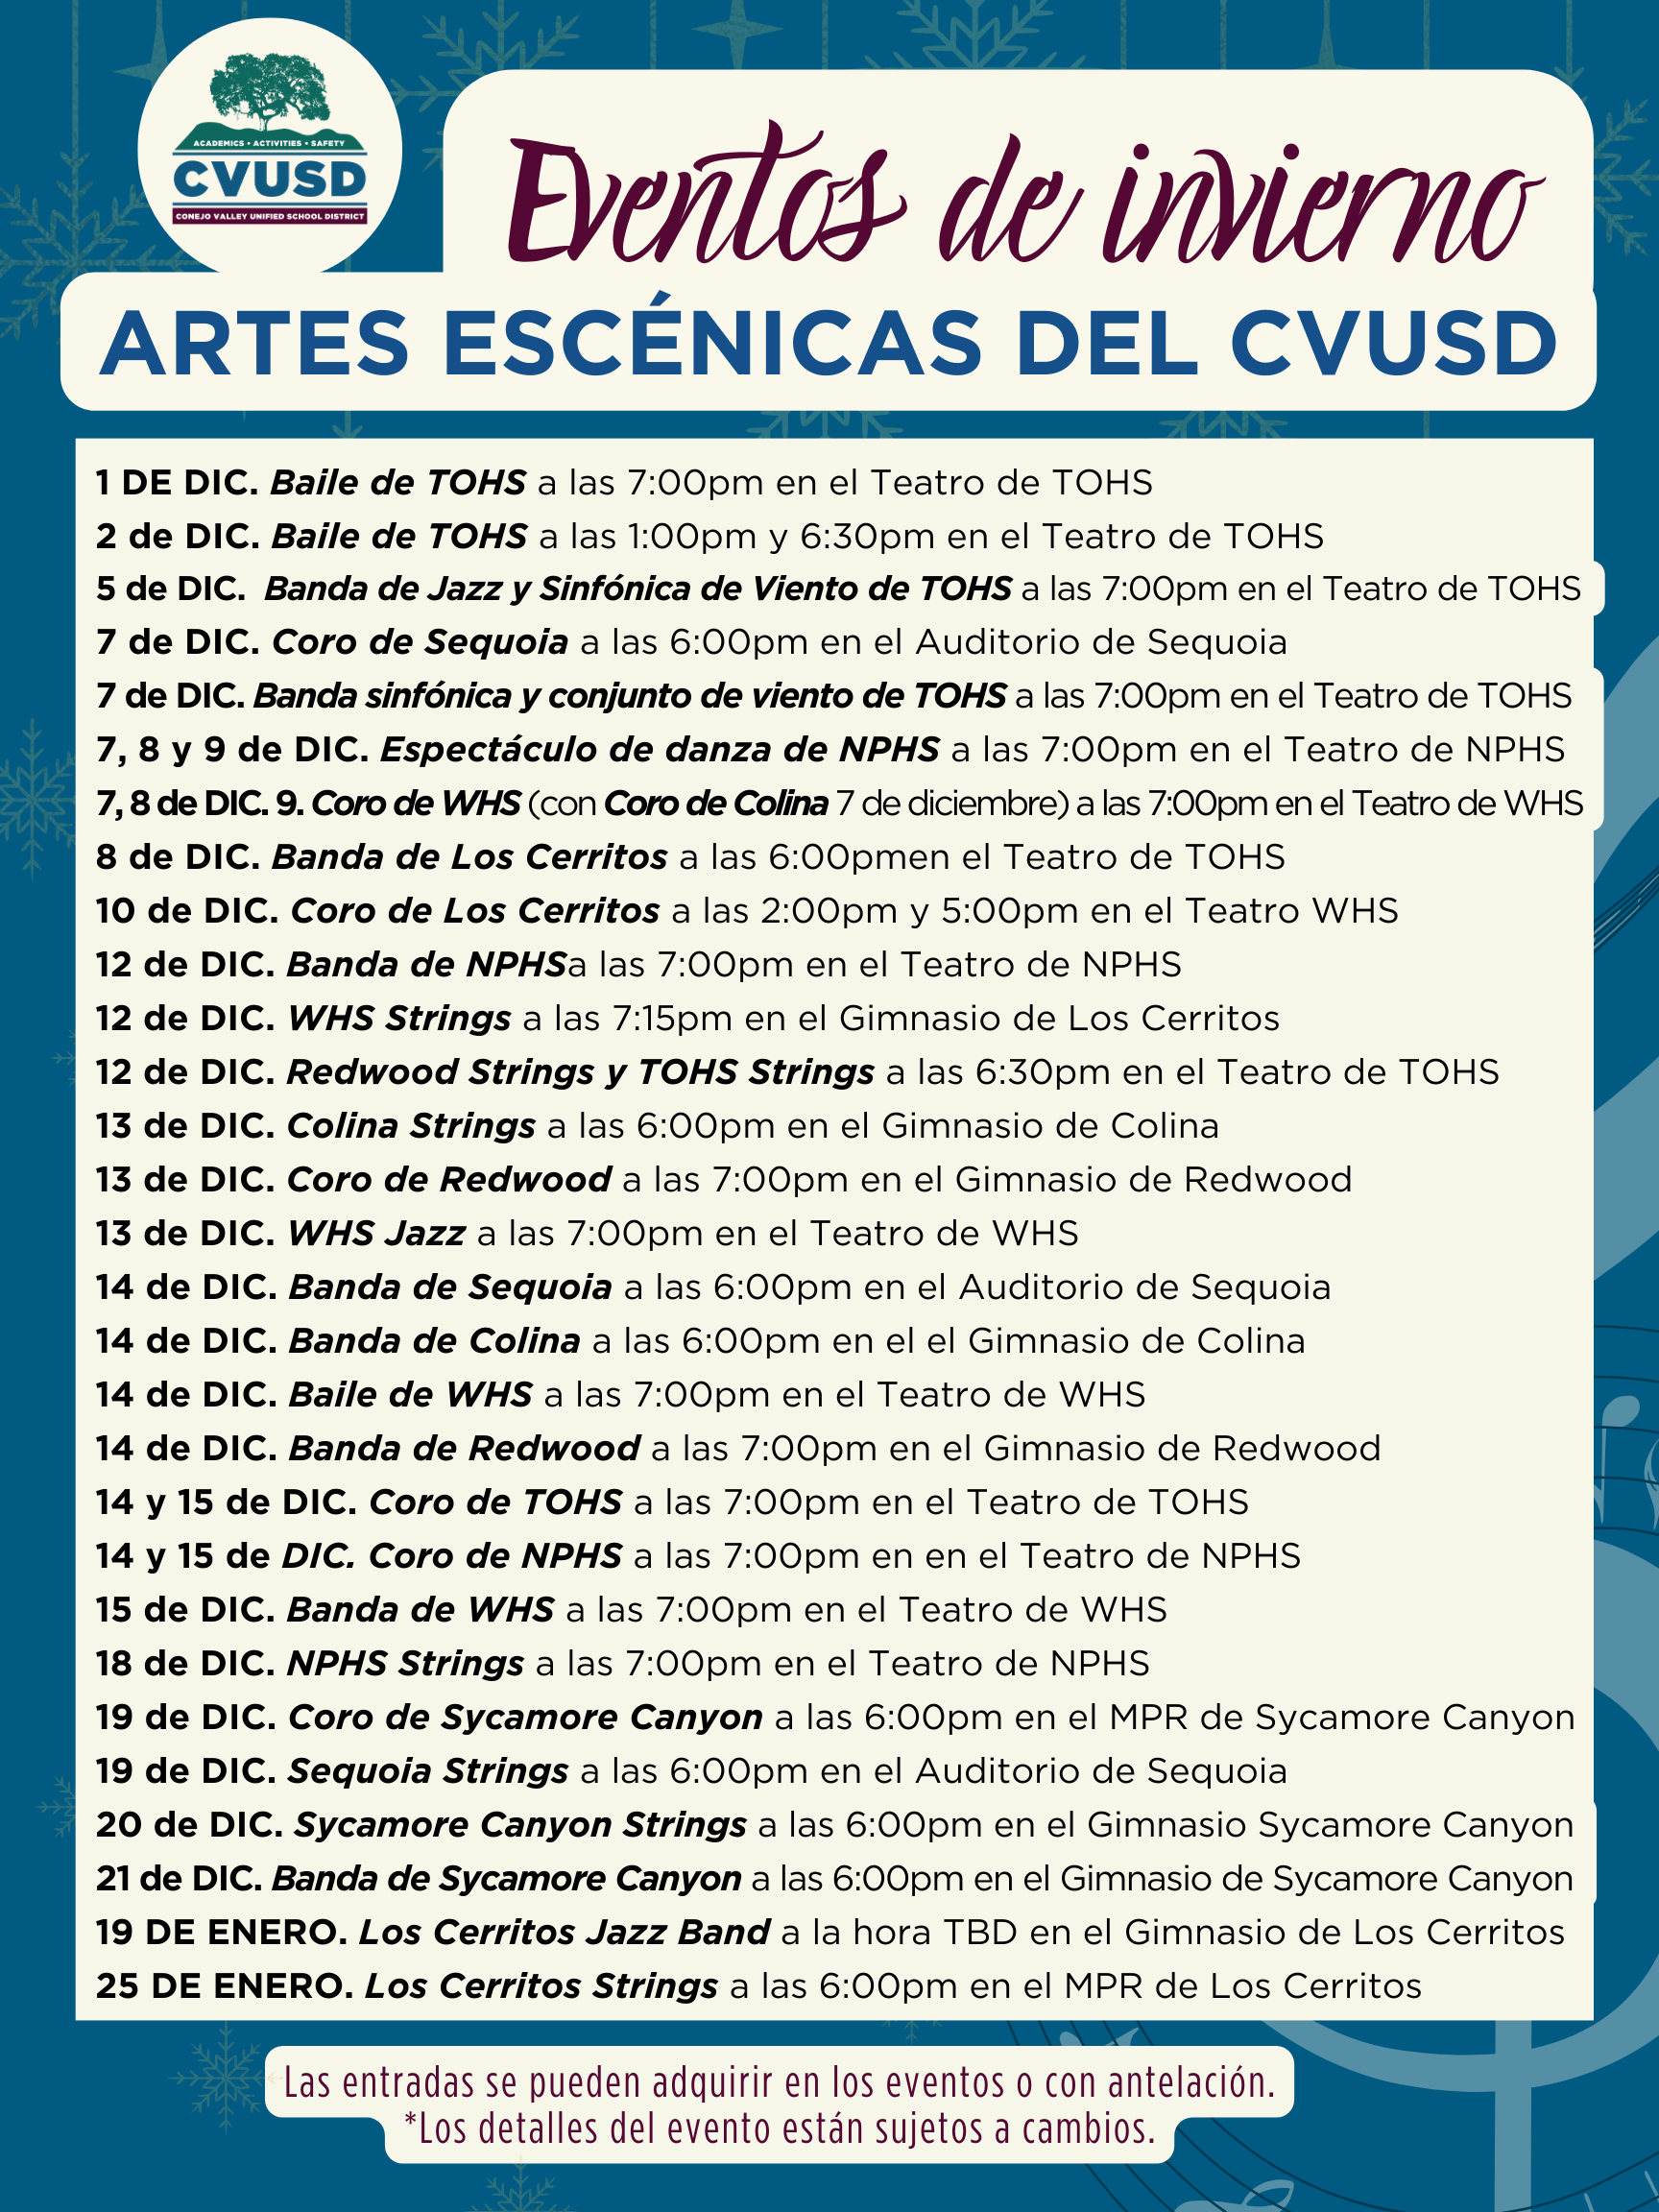 Event dates in spanish